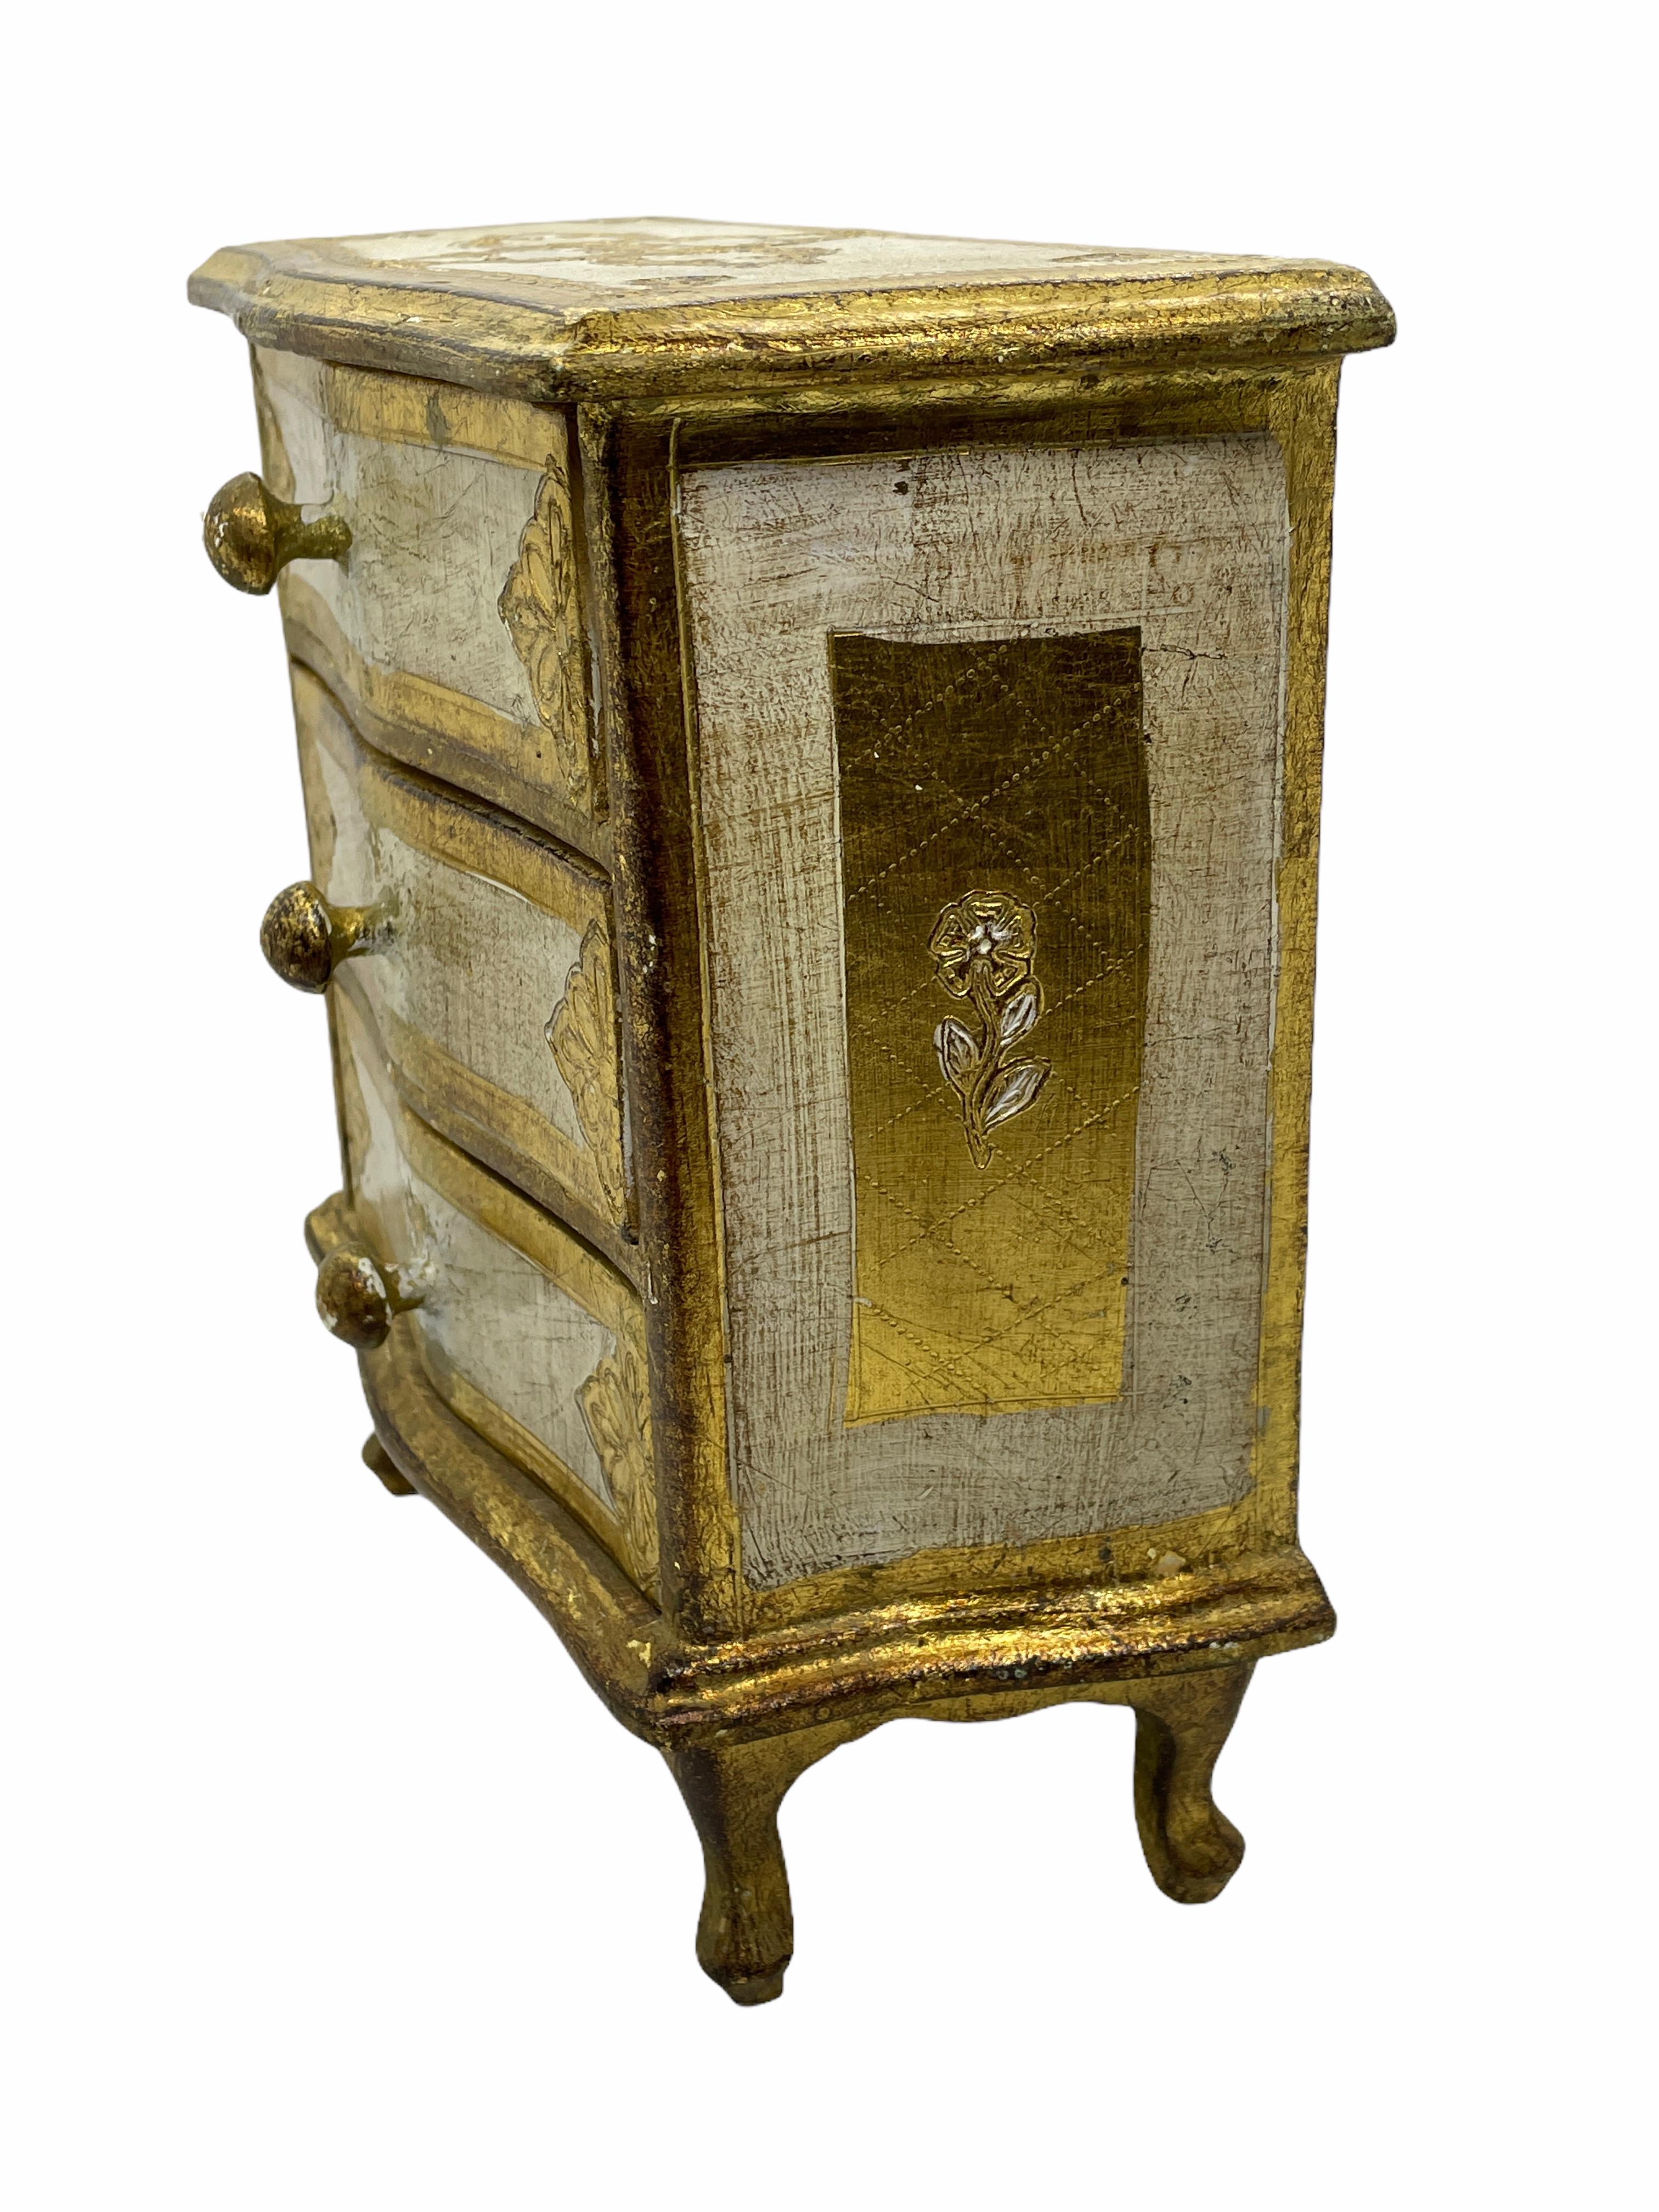 Details about   Vtg Ornate Gold Red Italian Florentine Tole Wood Designer Dresser Tray 